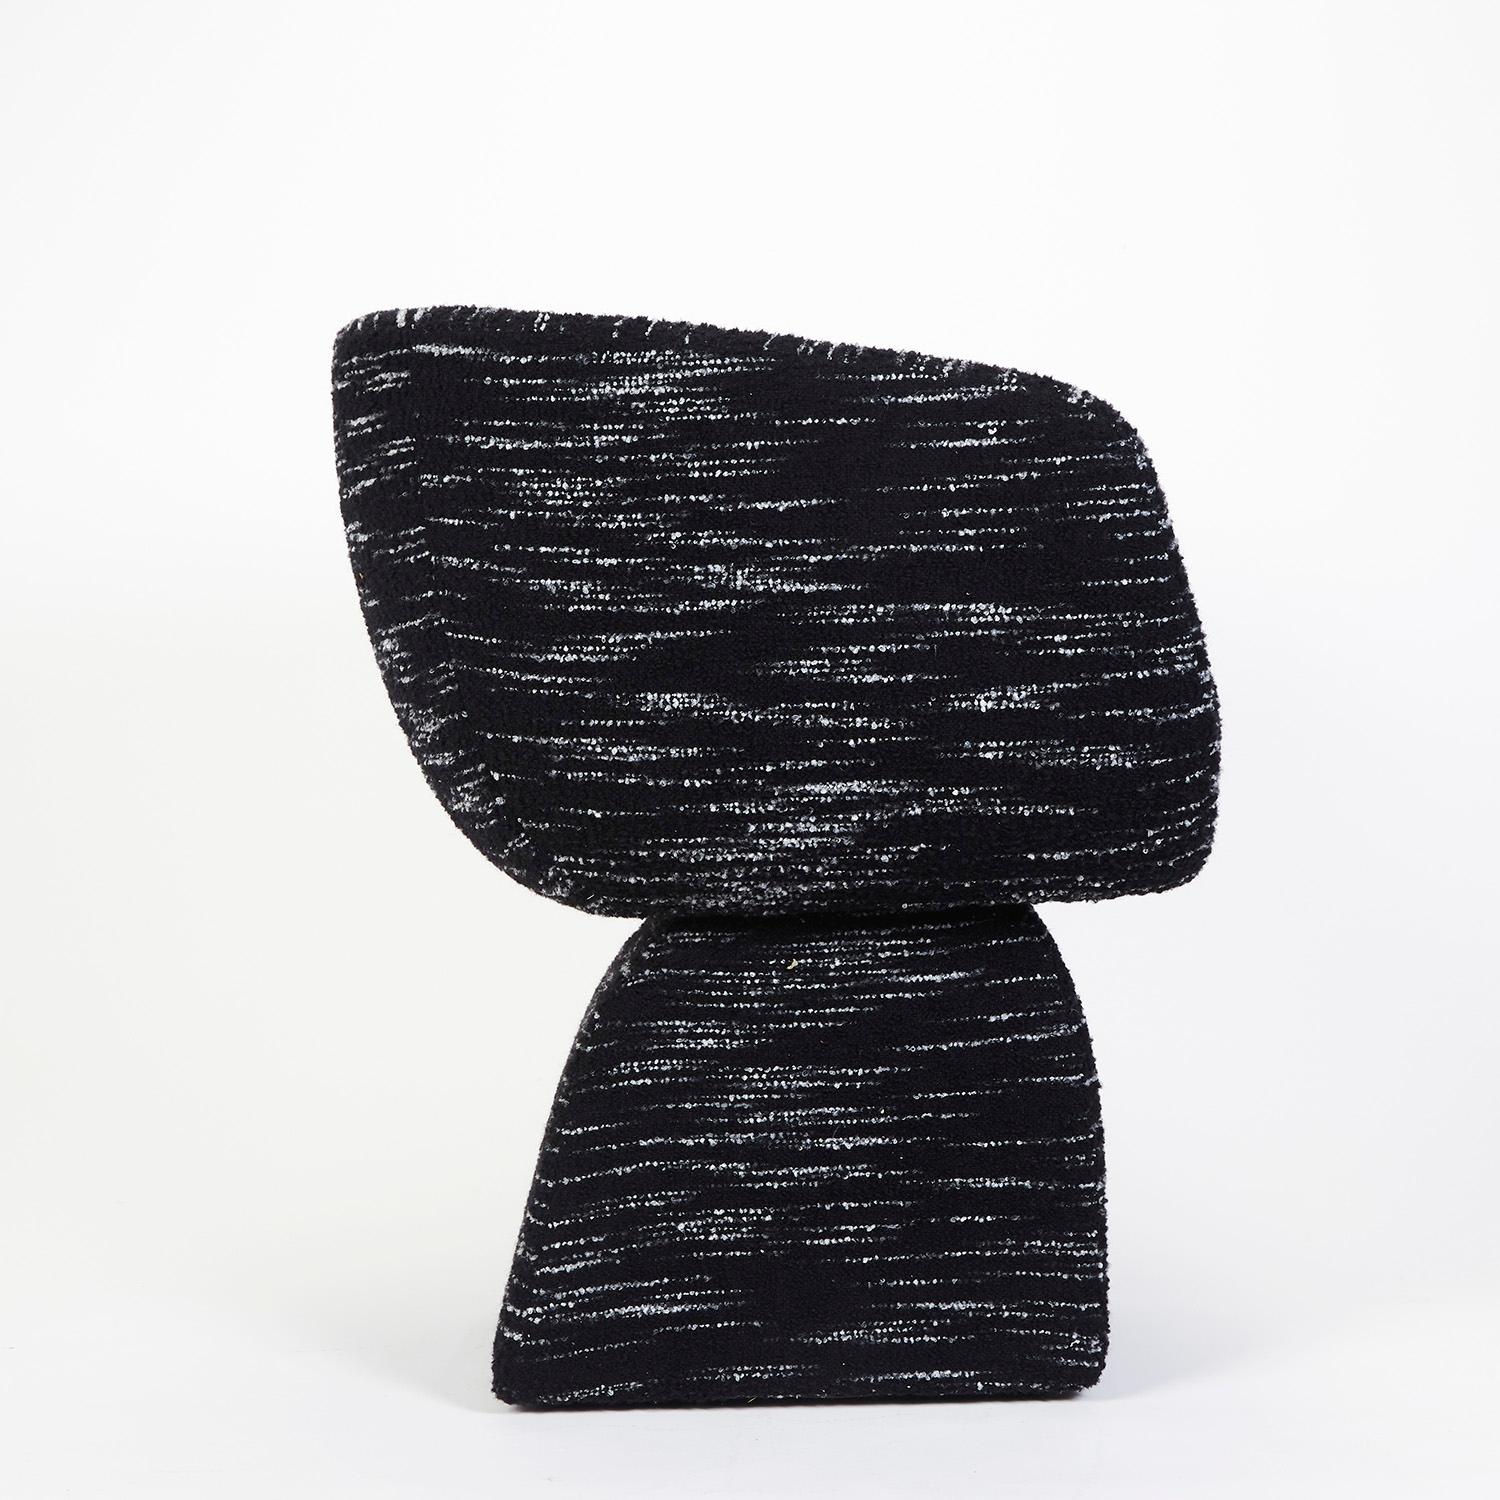 Chaise Oscar, tapissée d'un bouclé spécial, fabriquée à la main au Portugal par Duistt

Inspirée par les lignes courbes poétiques de l'architecture d'Oscar Niemeyer, la chaise Oscar séduit par ses courbes sensuelles et fluides. Comme l'a dit un jour